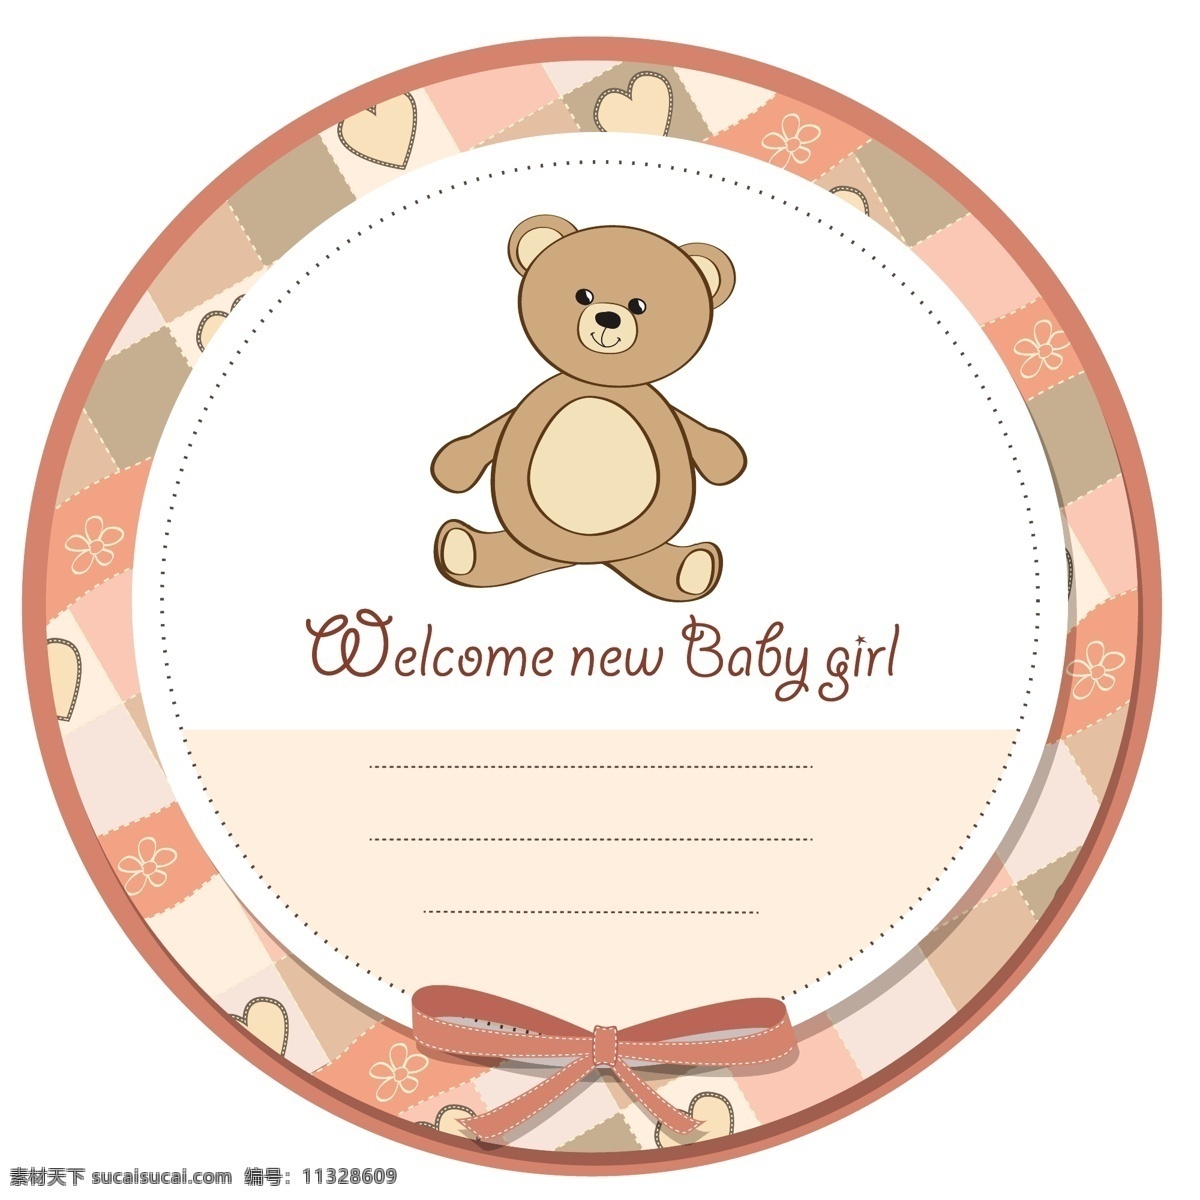 可爱 婴儿 洗澡 标签 泰迪 熊 框架 生日 宝贝 派对 邀请 卡片 圆 婴儿淋浴 模板 快乐 庆祝 孩子 新 丰富多彩 生日卡 白色